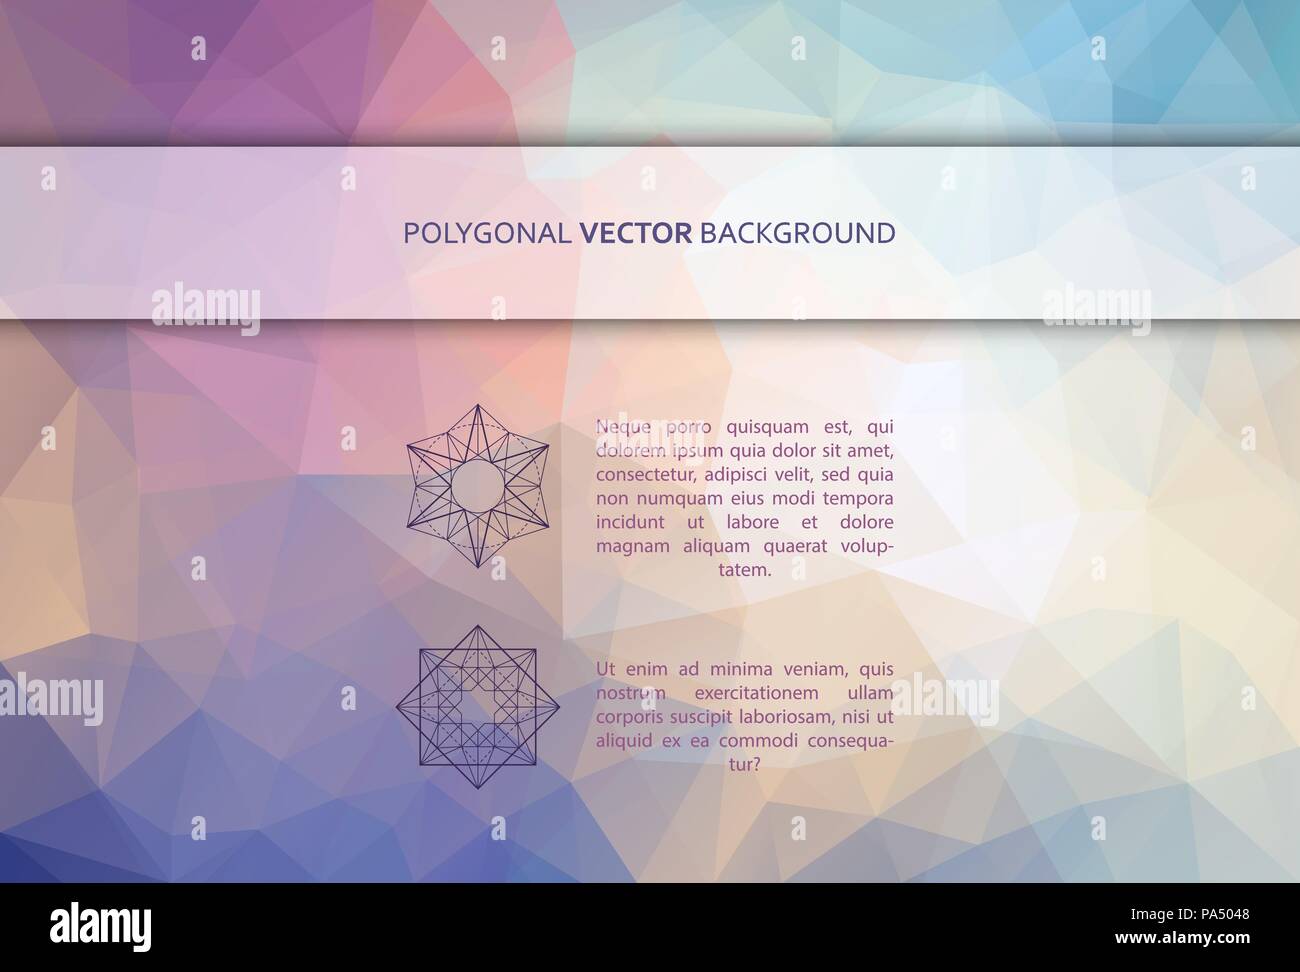 Vektor Rechteck polygonalen Hintergrund Stock Vektor